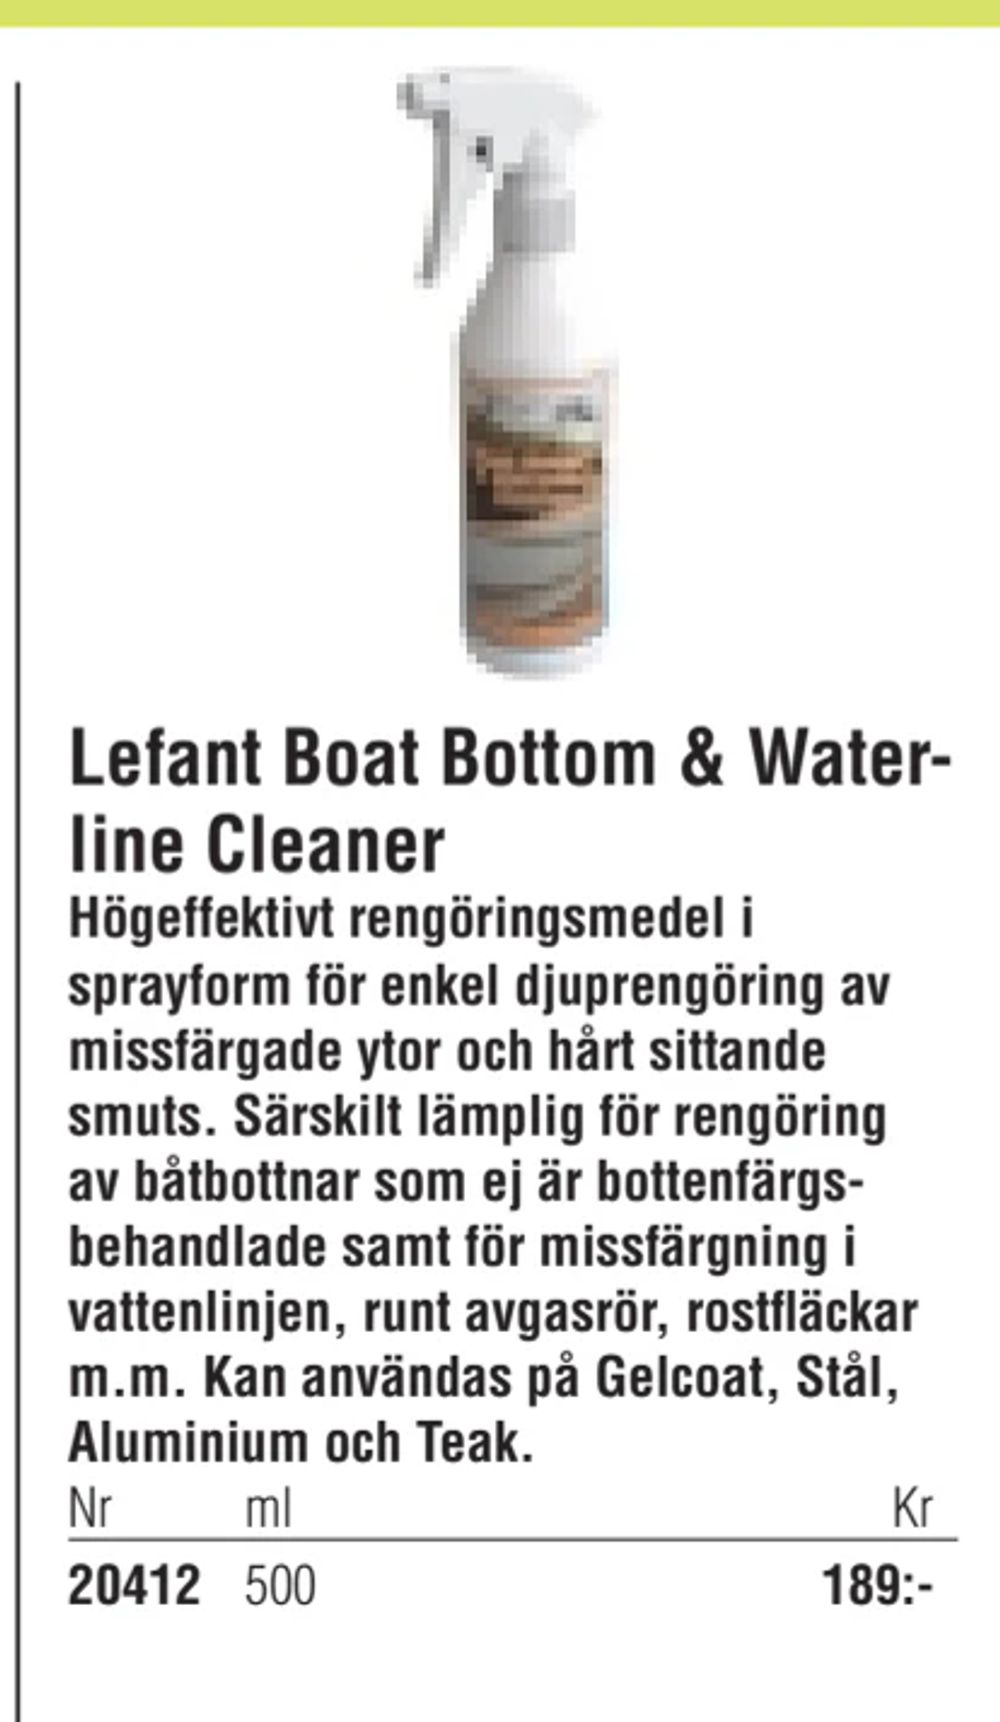 Erbjudanden på Lefant Boat Bottom & Waterline Cleaner från Erlandsons Brygga för 189 kr